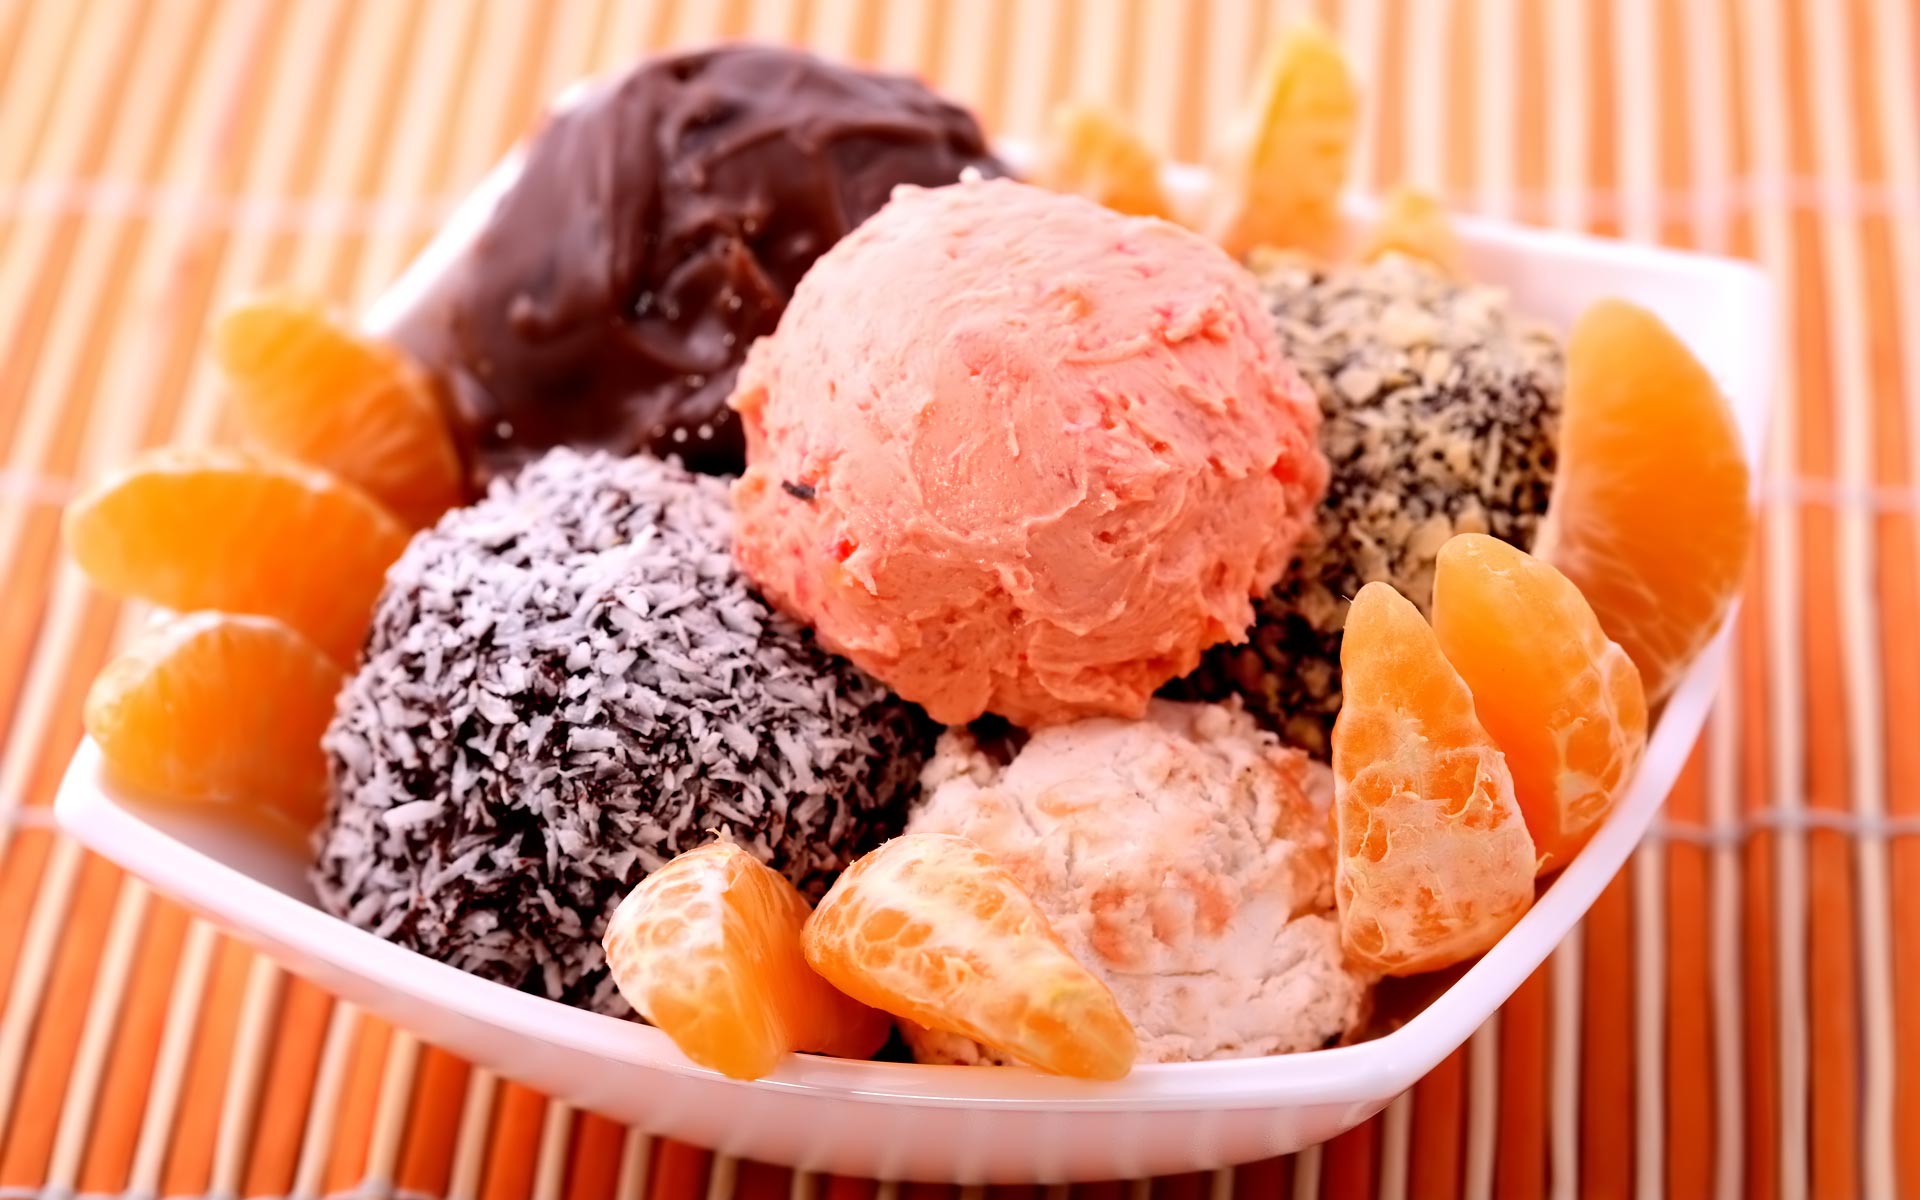 アイスクリーム壁紙,食物,皿,チョコレートアイスクリーム,甘味,デザート